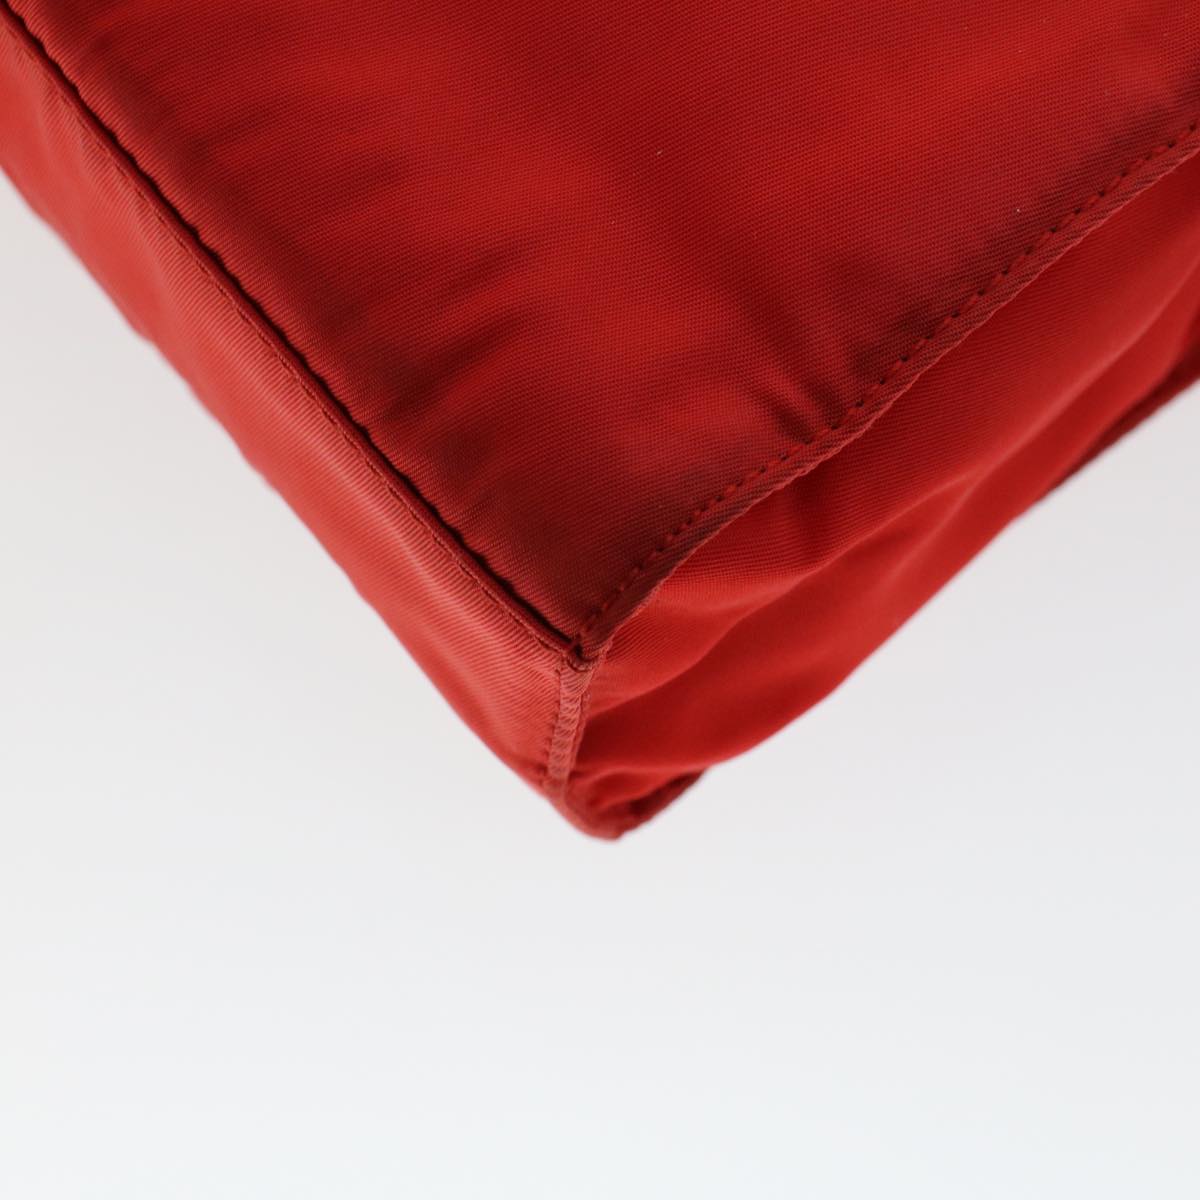 PRADA Hand Bag Nylon Red Auth yk7429